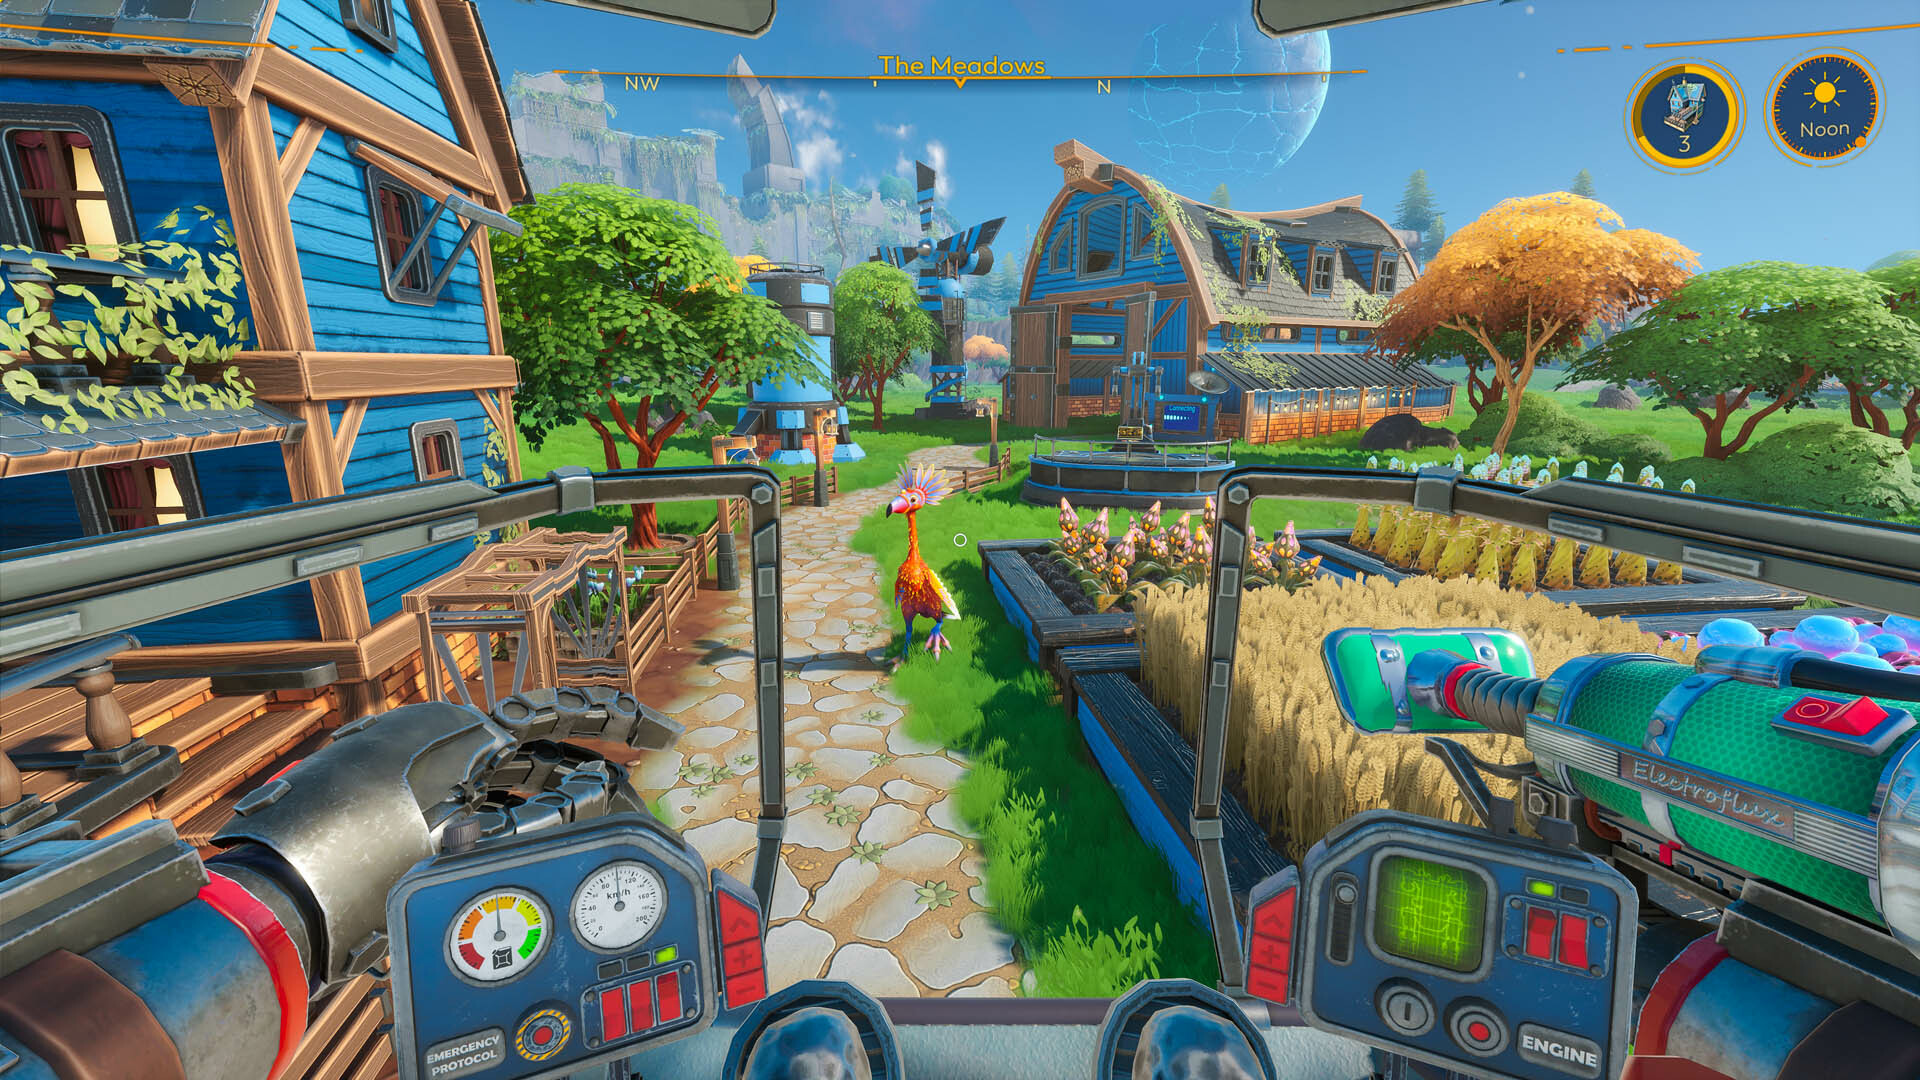 Lightyear Frontier - à la première personne, un joueur est assis dans un cockpit mécanique et regarde deux granges bleues, plusieurs jardinières et un oiseau extraterrestre aux plumes vives.